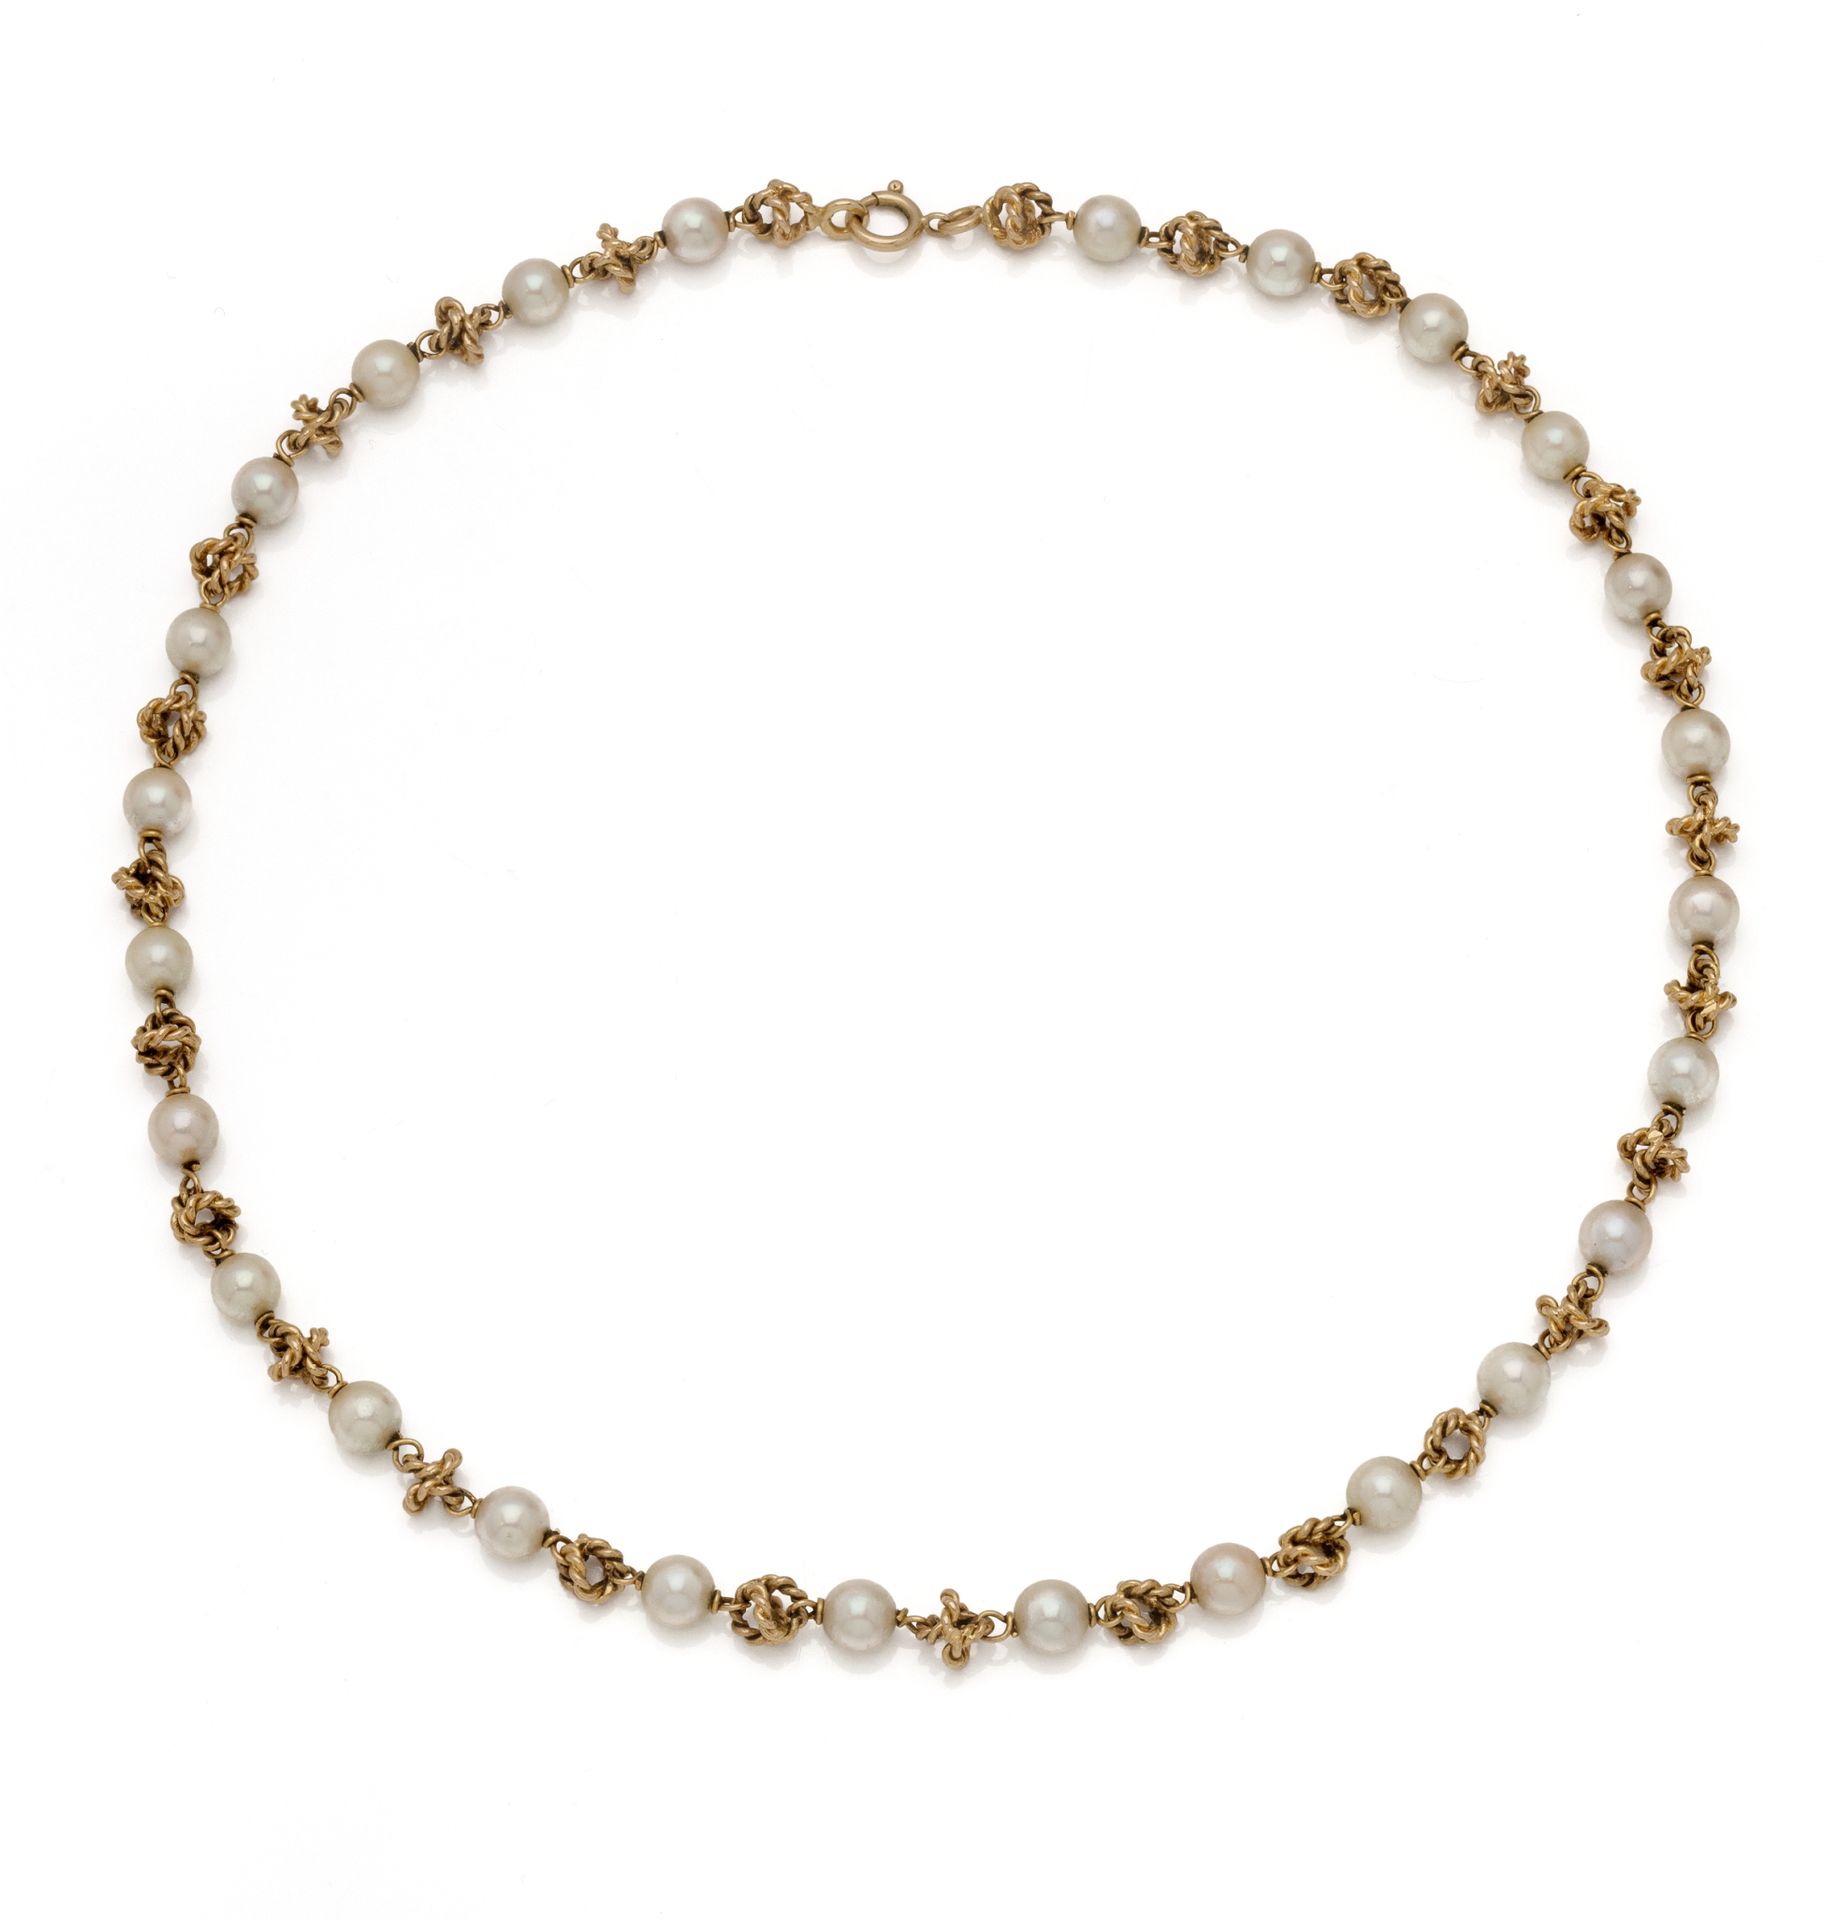 Null 18K(750/1000)黄金交替使用养殖珍珠和扭曲的链接制成的项链。
法国作品。
长度 : 43.5 cm - 毛重 : 25.5 g